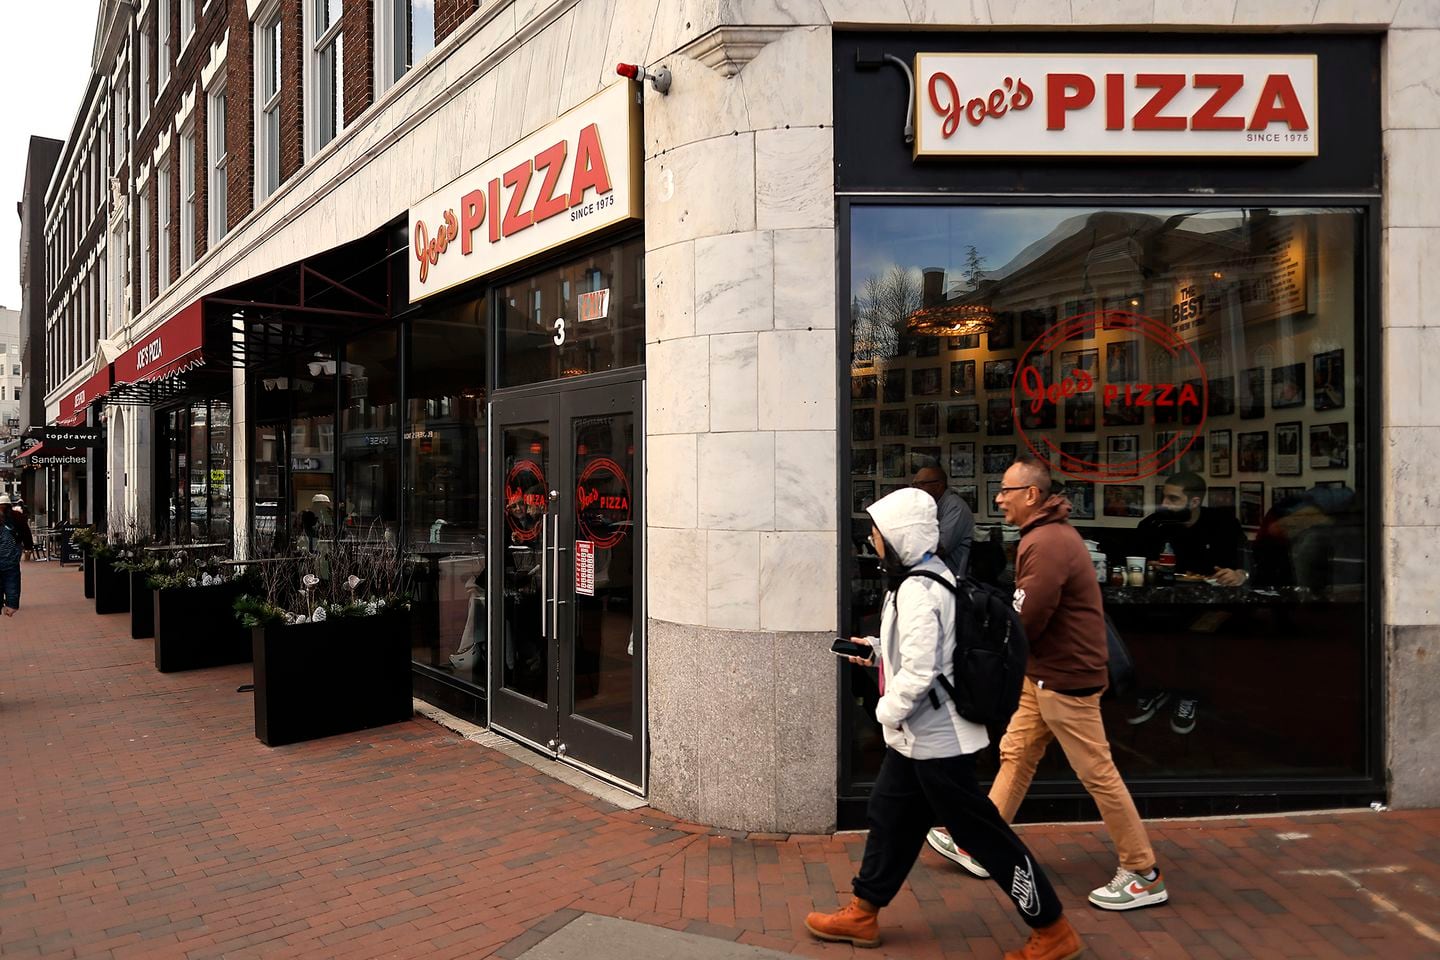 Joe’s Pizza in Harvard Square.